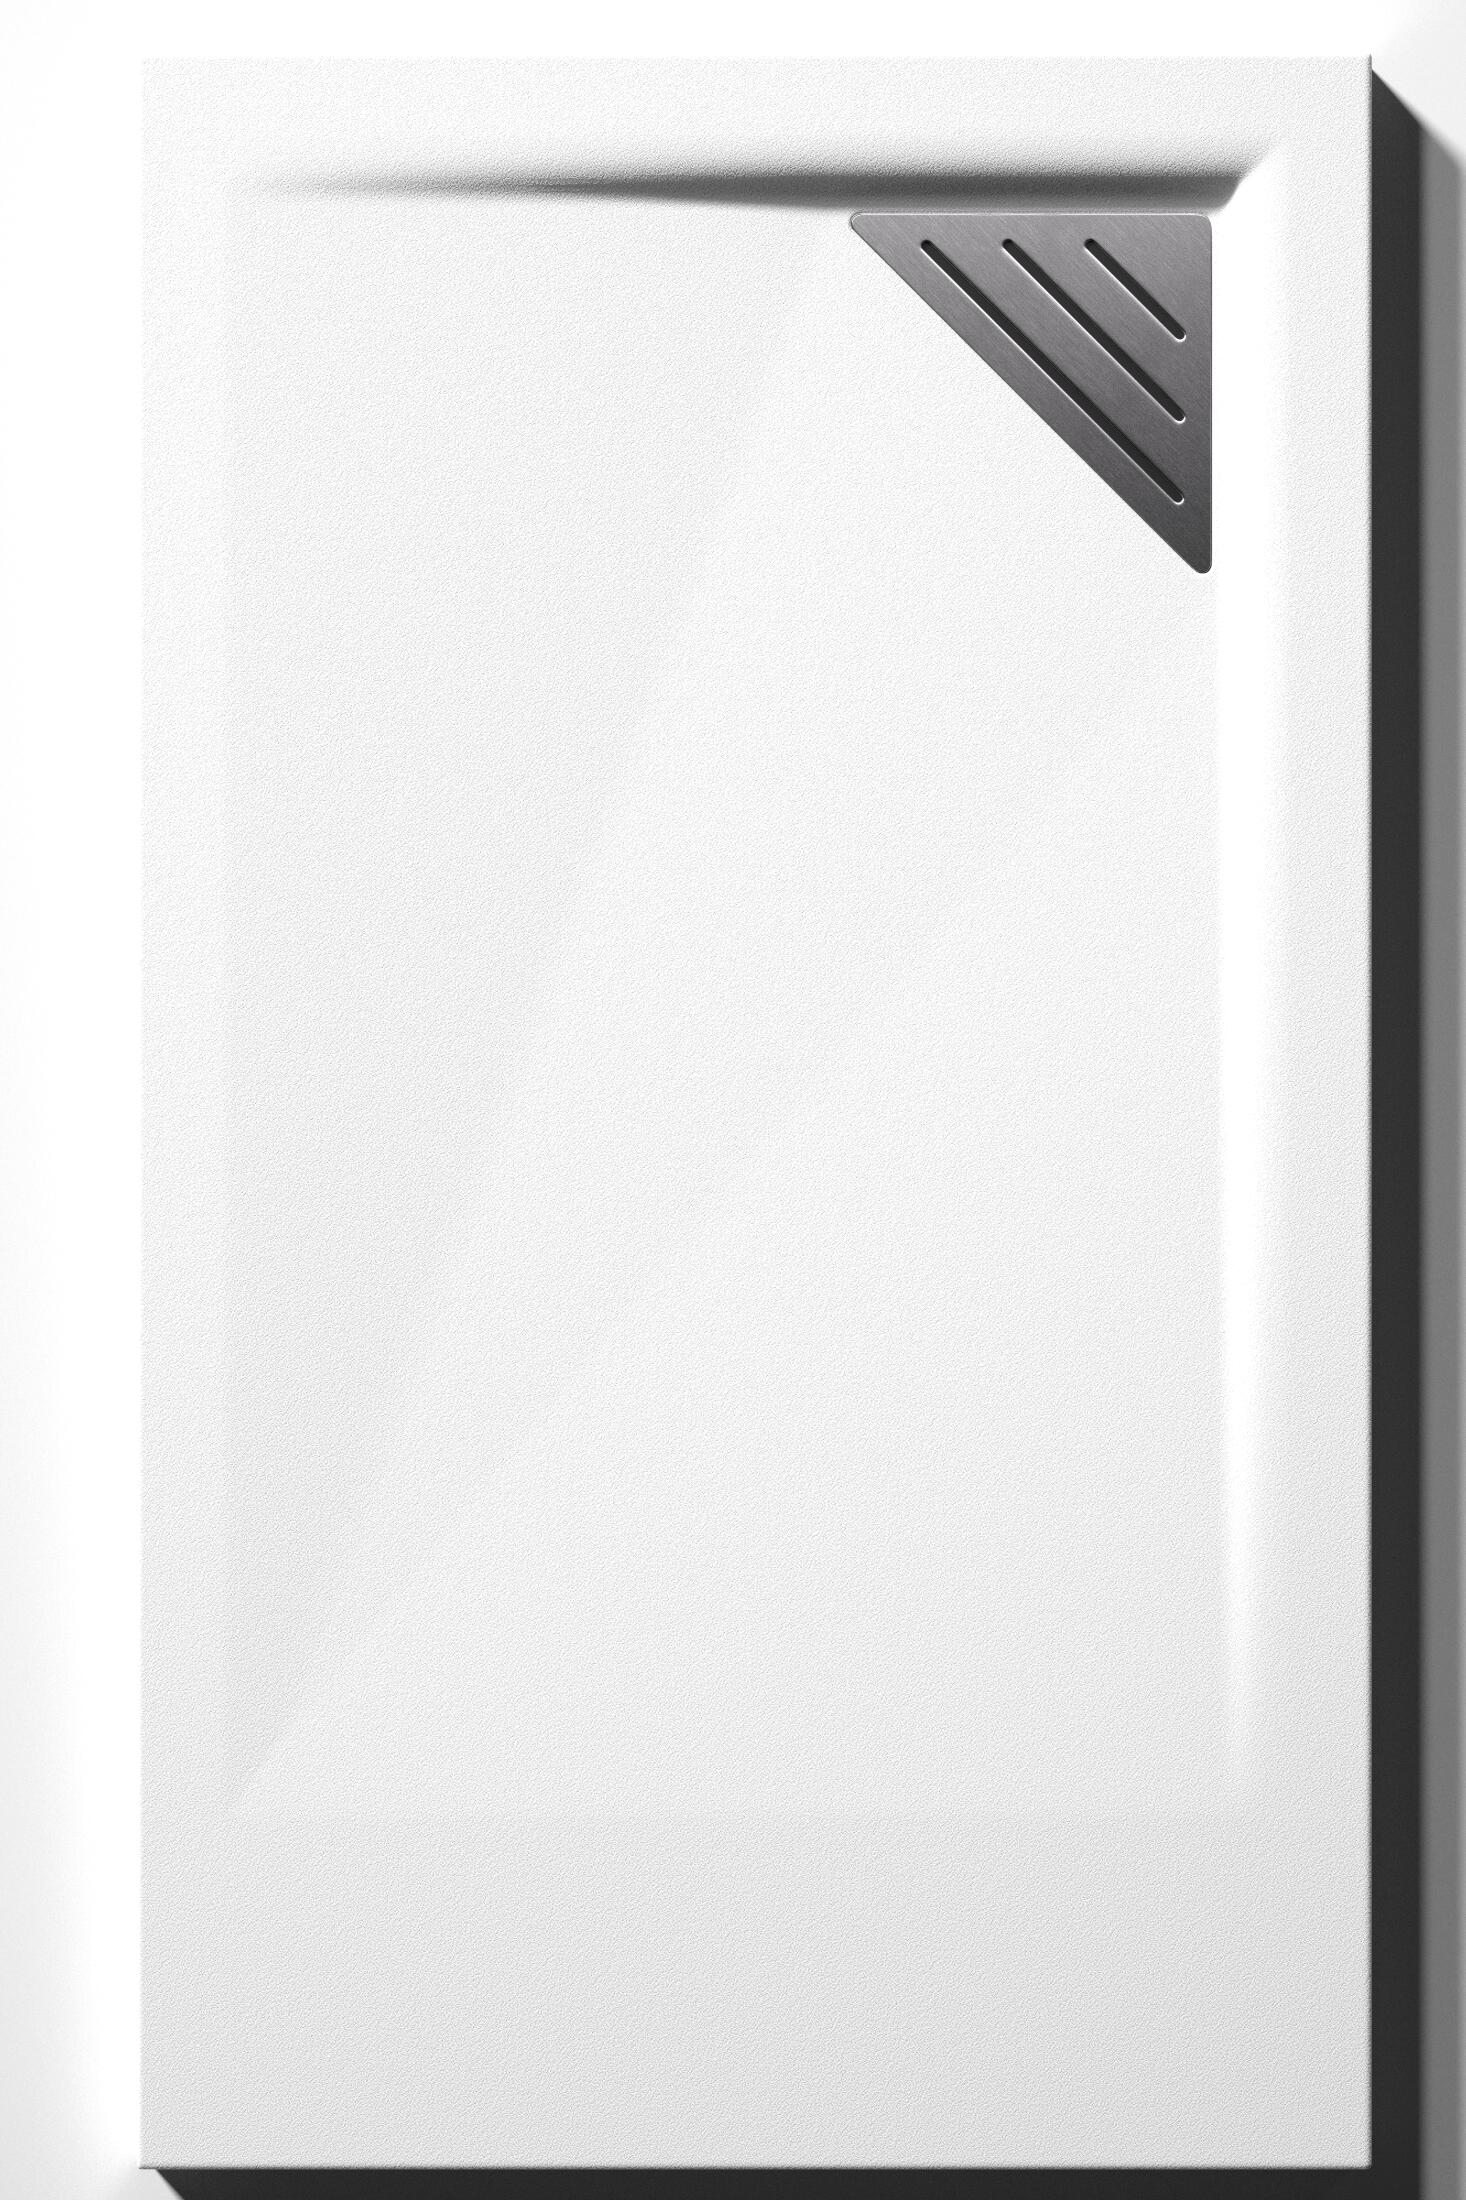 Plato de ducha meet 150x80 cm blanco